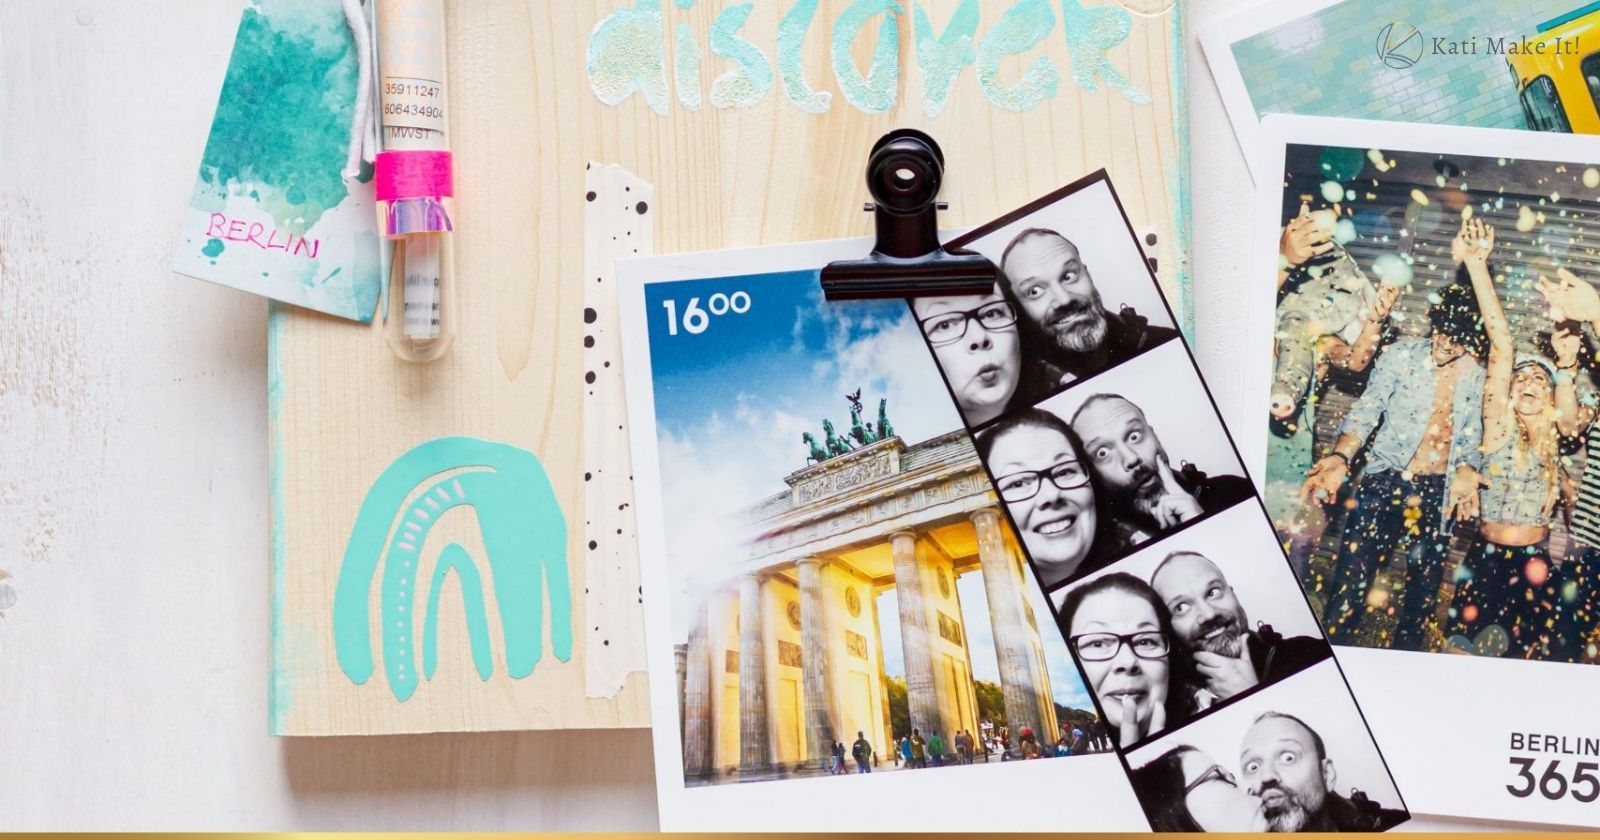 DIY Foto Pinnwand für Urlaubserinnerungen basteln. Praktische Deko Idee & Aufbewahrung für Fotos, Karten & Souvenirs mit Plotterdatei Regenbogen.